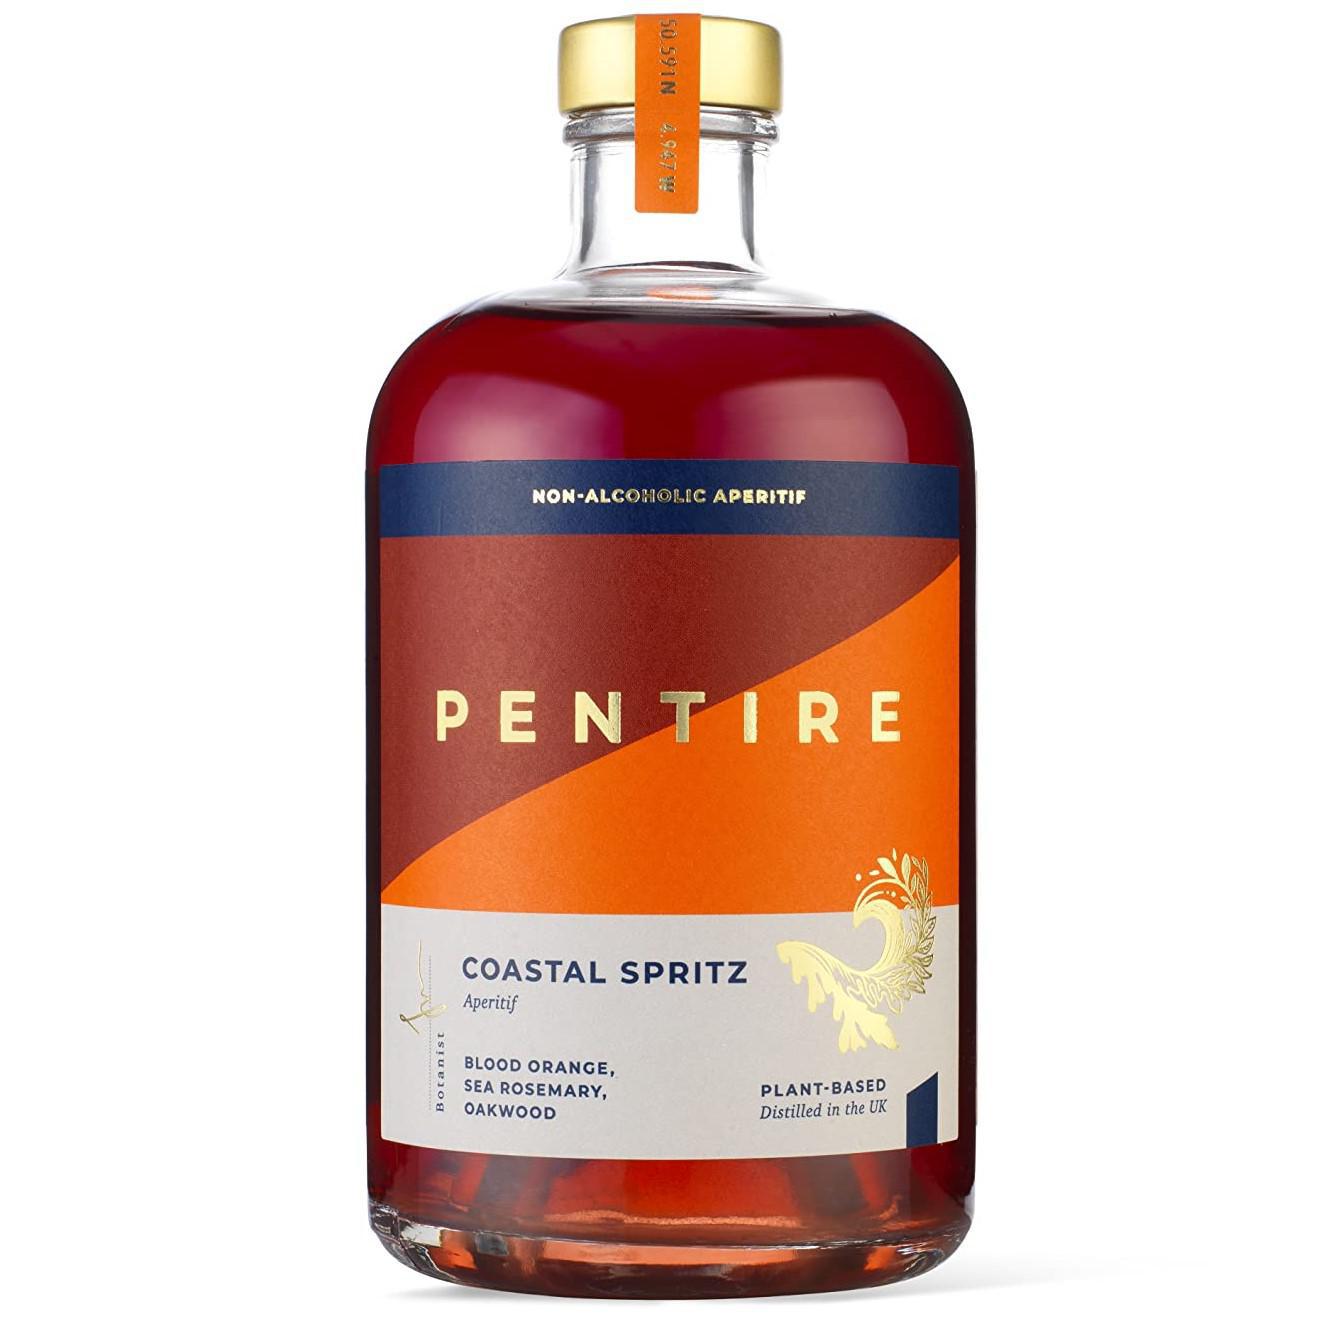 Pentire - 'Coastal Spritz' Non-Alcoholic Aperitif (700ML) by The Epicurean Trader